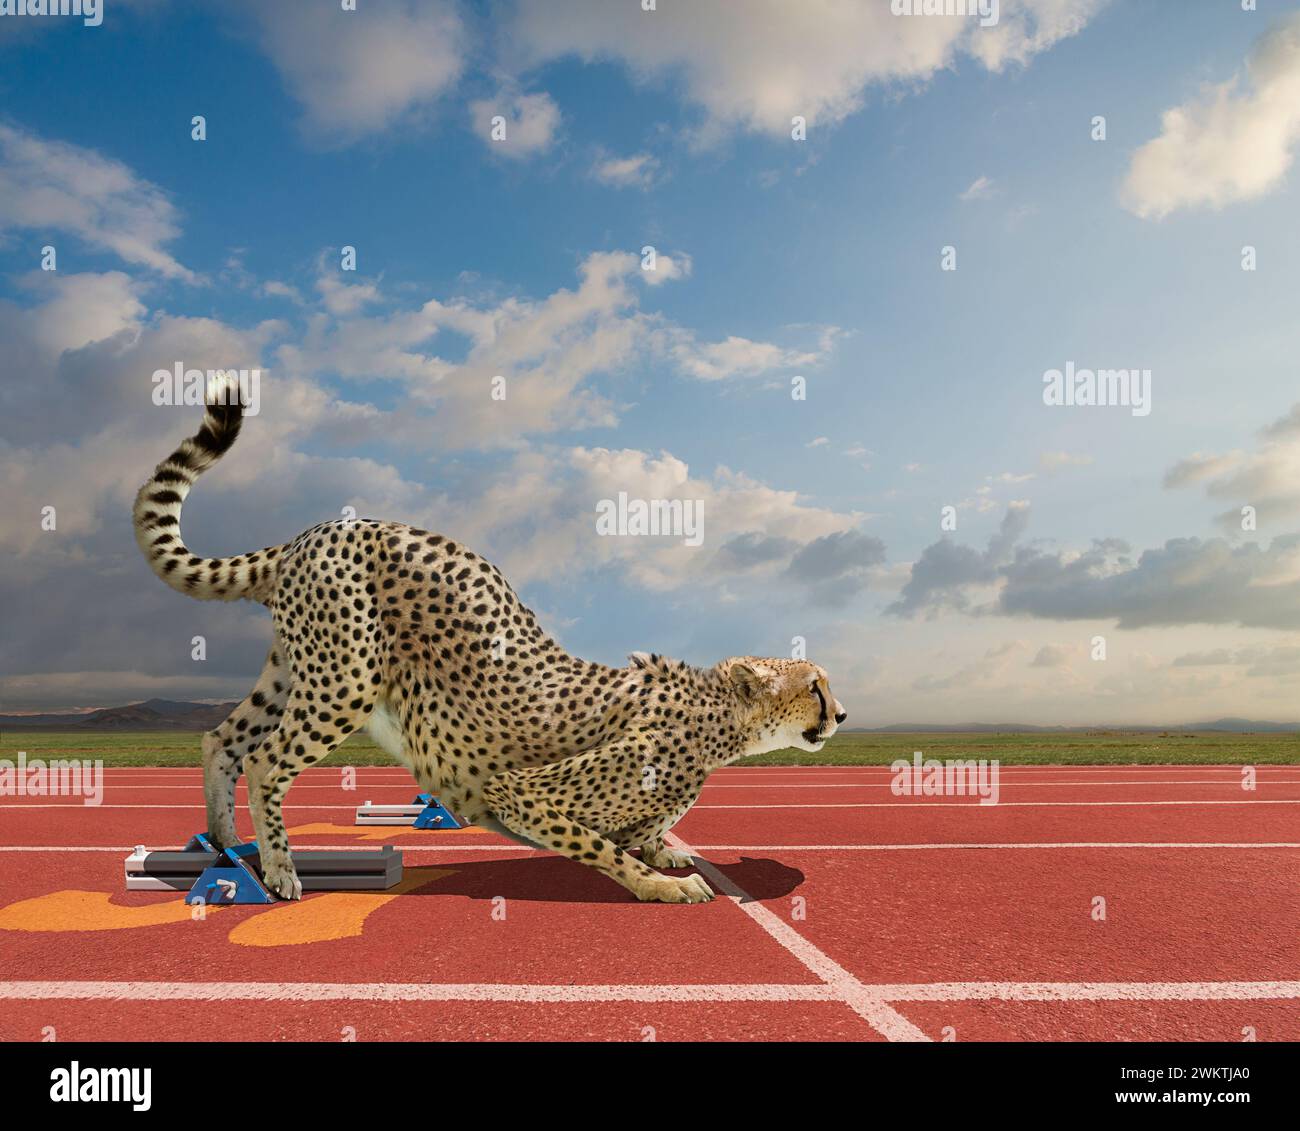 Un guépard se prépare au sprint, les pieds dans les blocs de départ, sur une piste dans une image sur la vitesse et les départs rapides. Banque D'Images